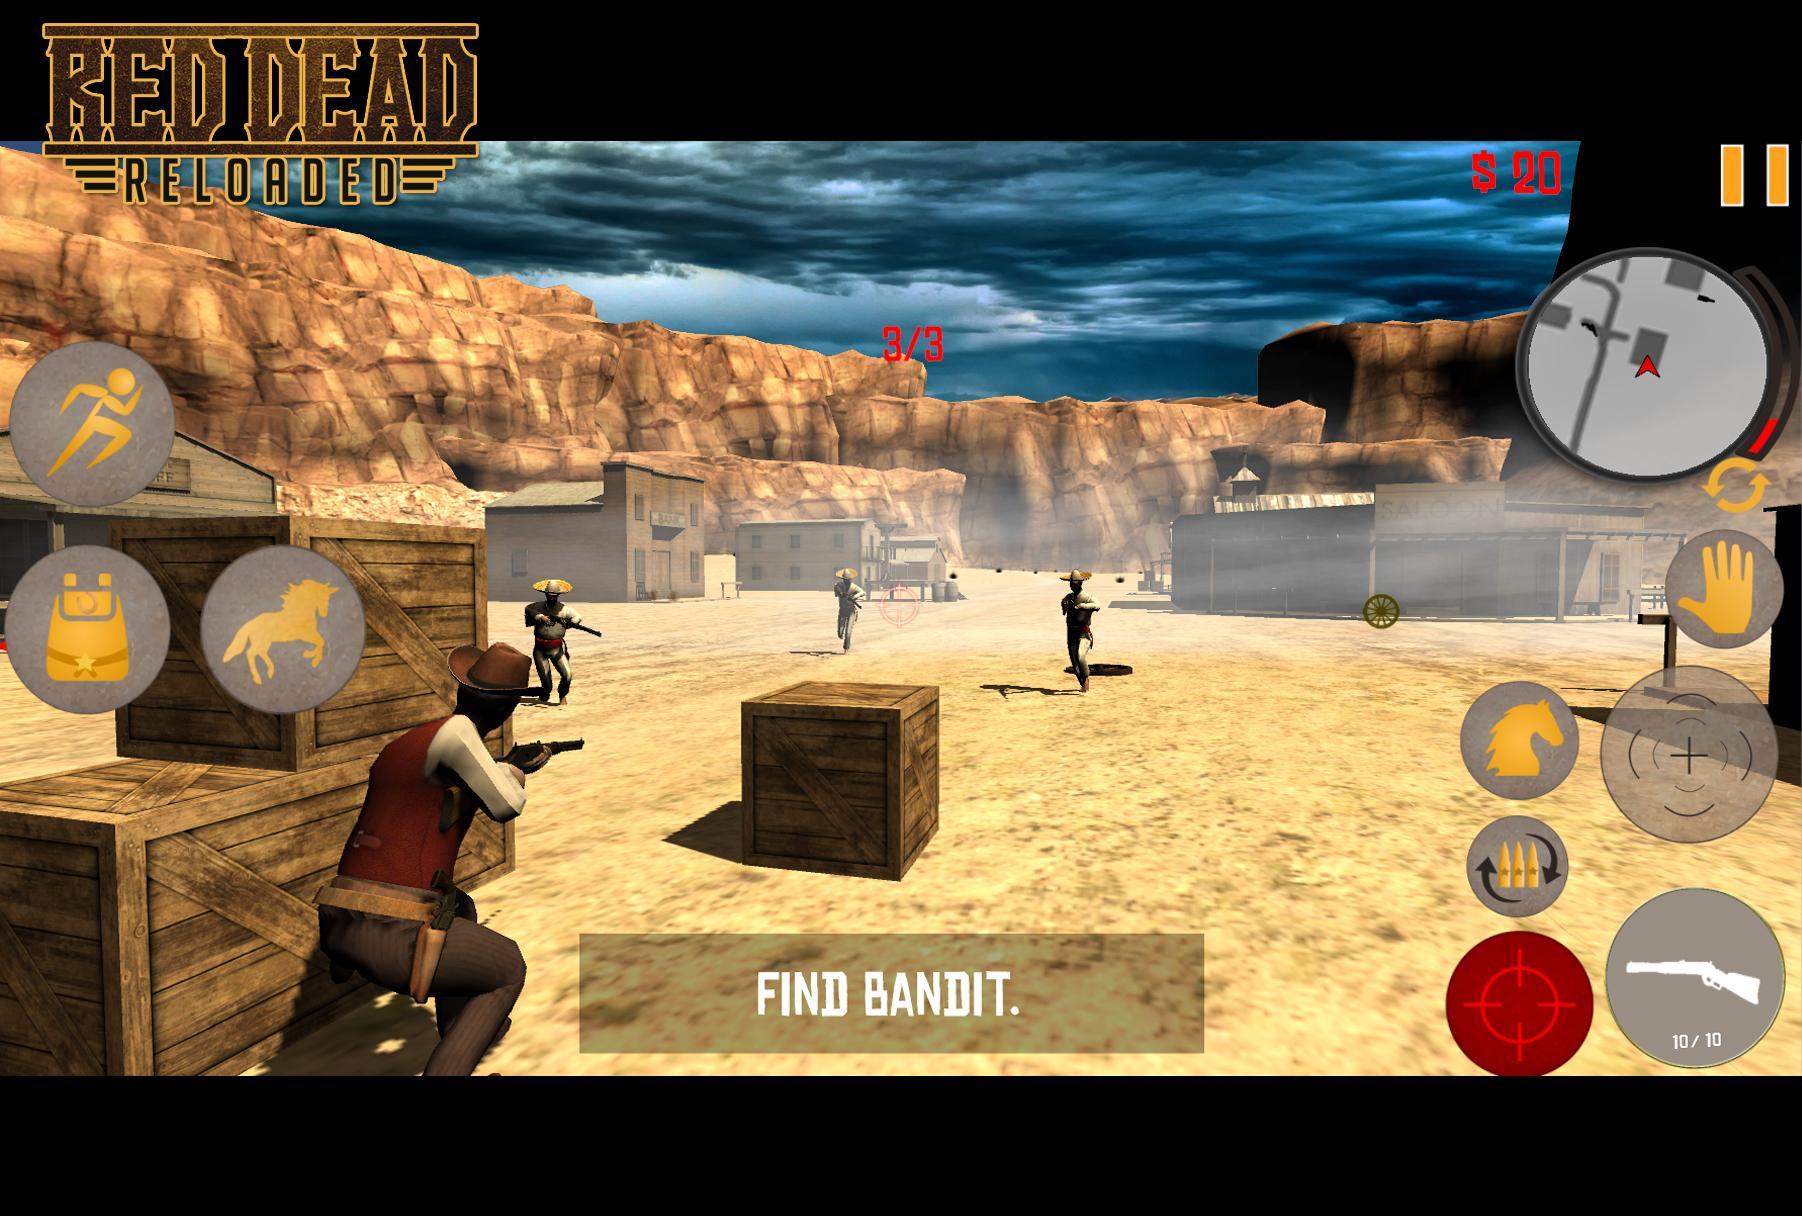 Screenshot 1 of R Western Dead Reloaded (Action im Sandbox-Stil) 